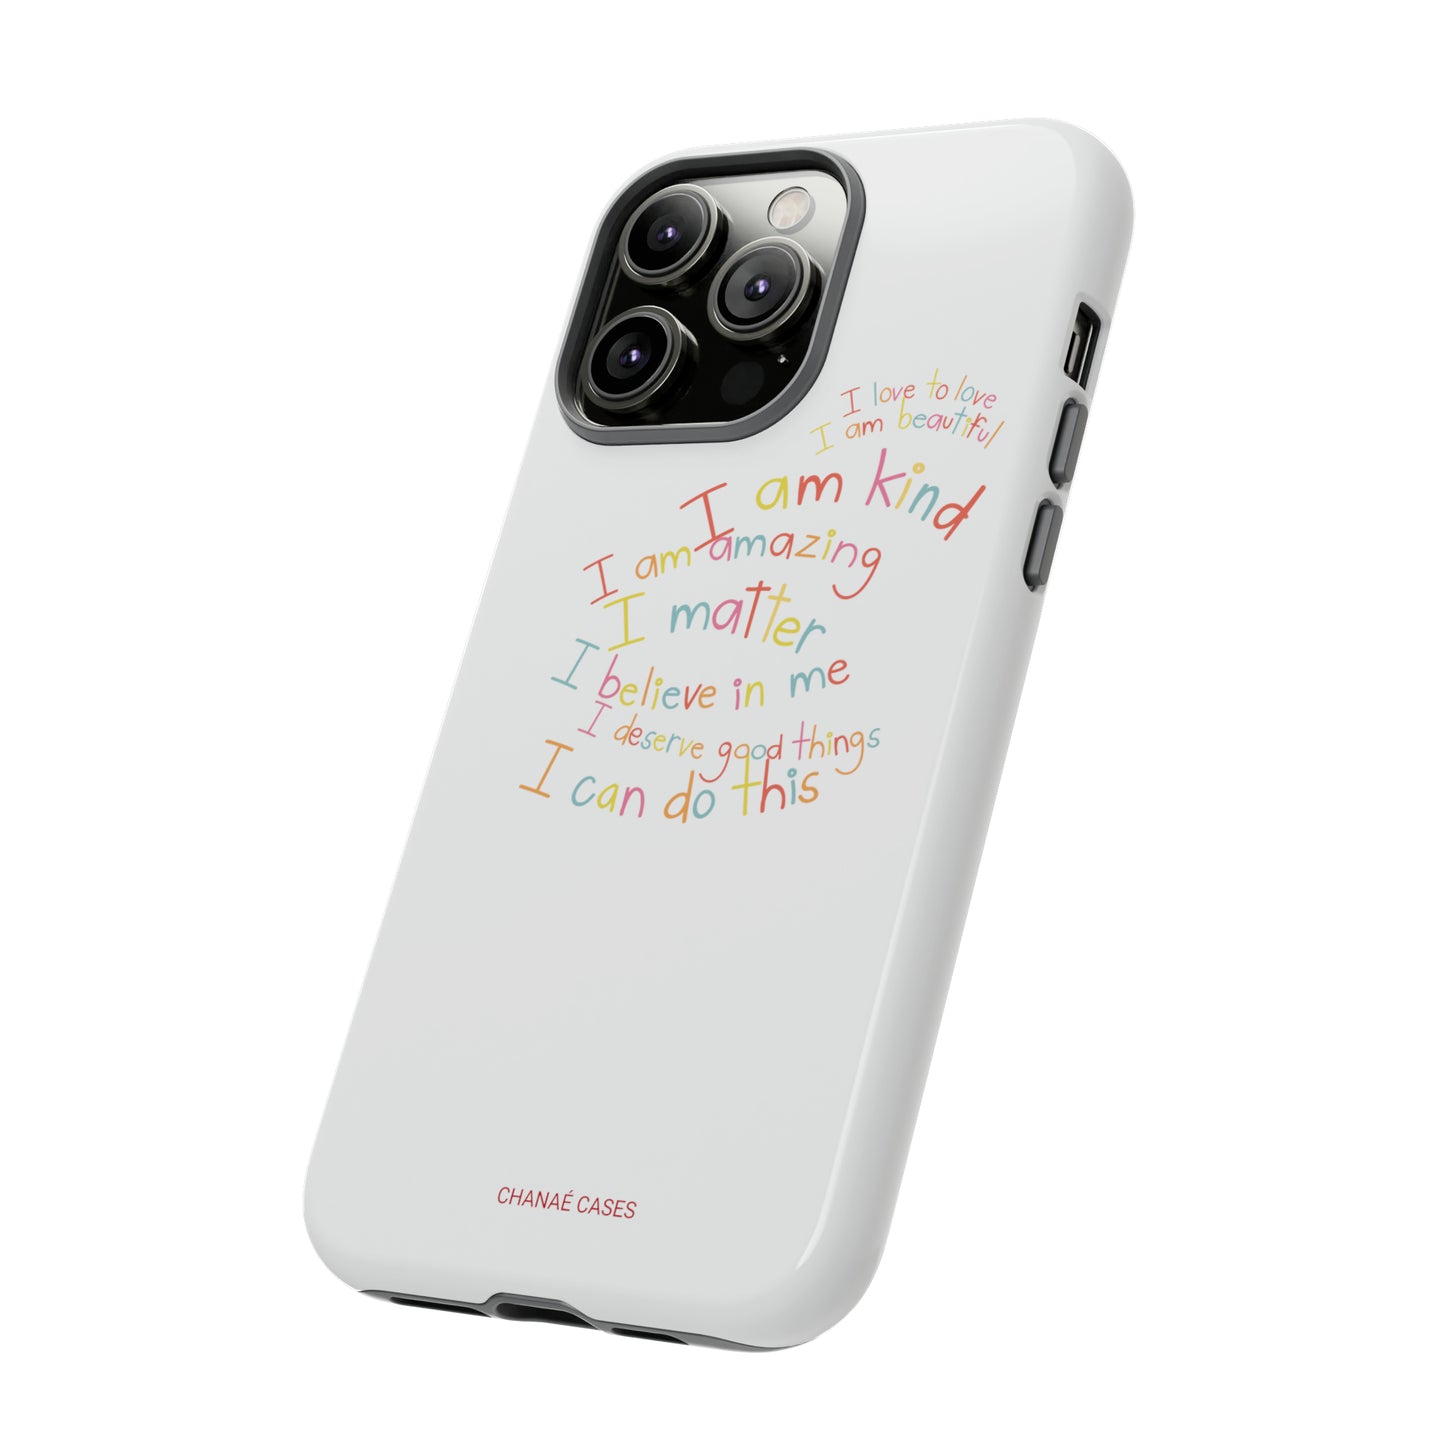 Positive Notes To You iPhone "Tough" Case (White)